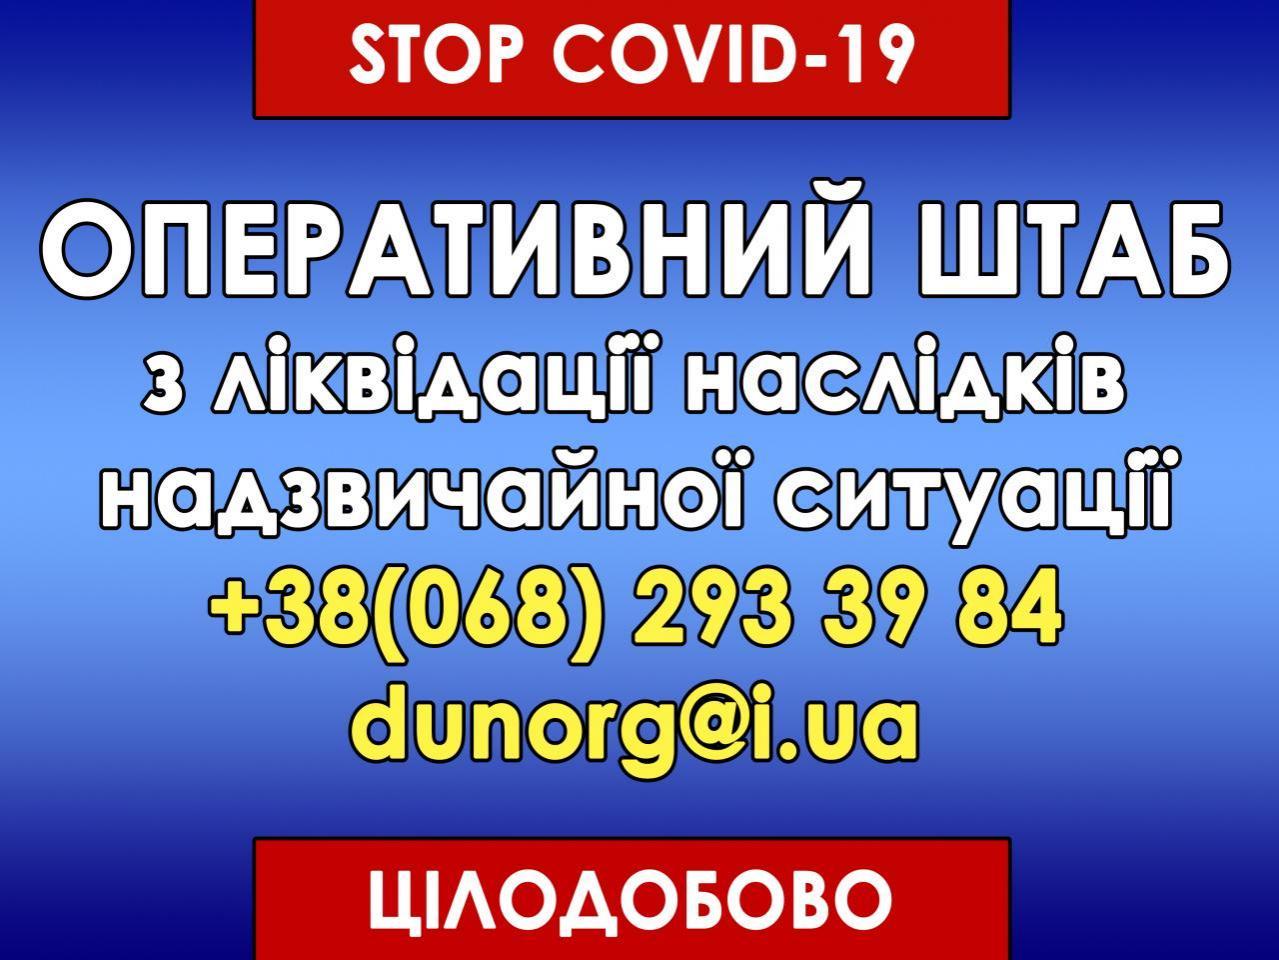 http://dunrada.gov.ua/uploadfile/archive_news/2021/04/12/2021-04-12_4035/images/images-78872.jpg